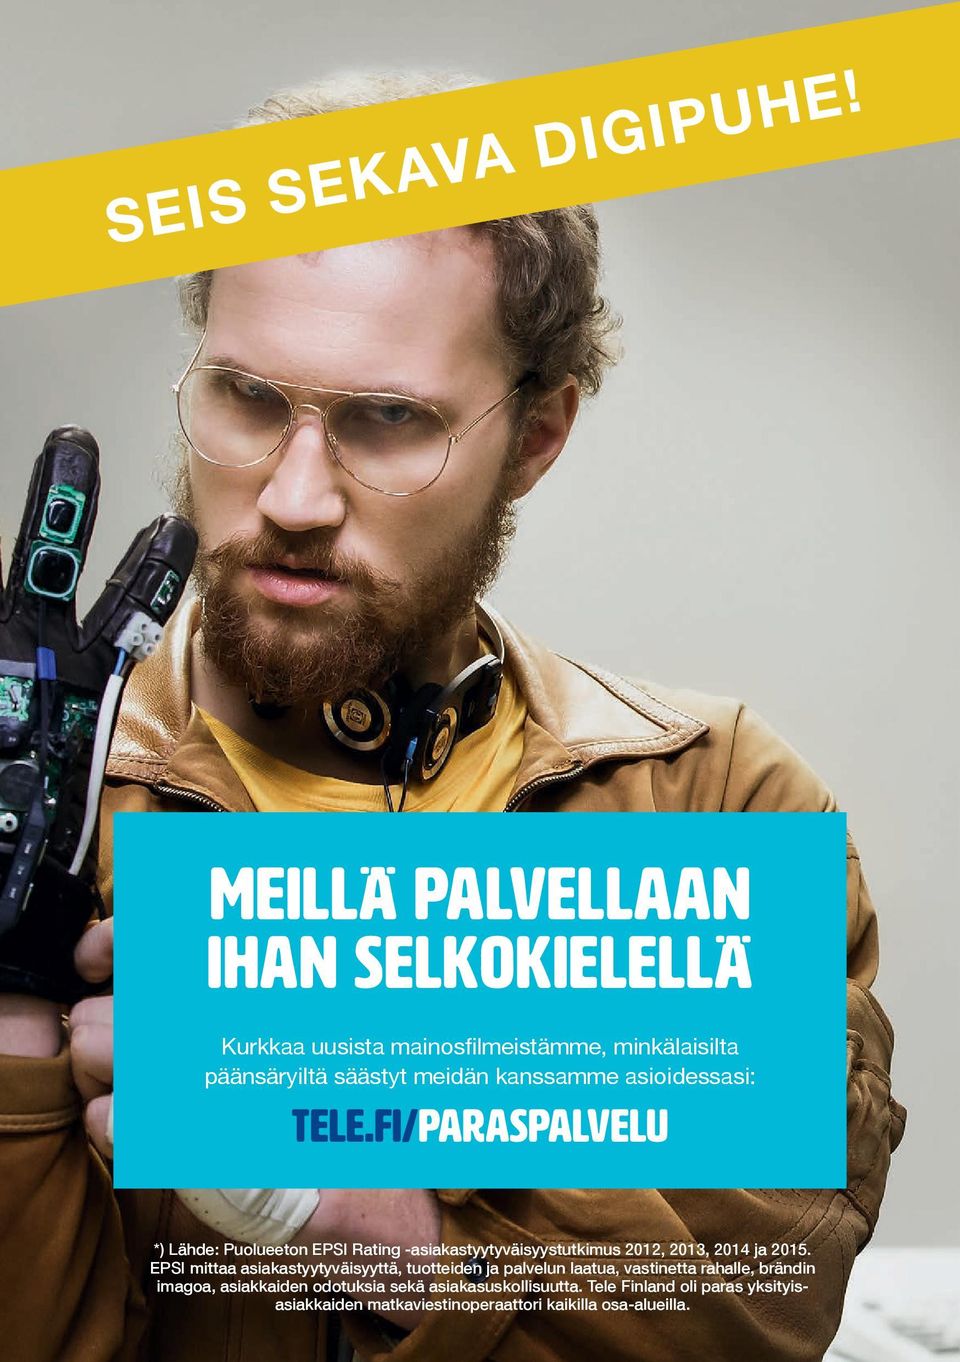 asioidessasi: tele.fi/paraspalvelu *) Lähde: Puolueeton EPSI Rating -asiakastyytyväisyystutkimus 2012, 2013, 2014 ja 2015.